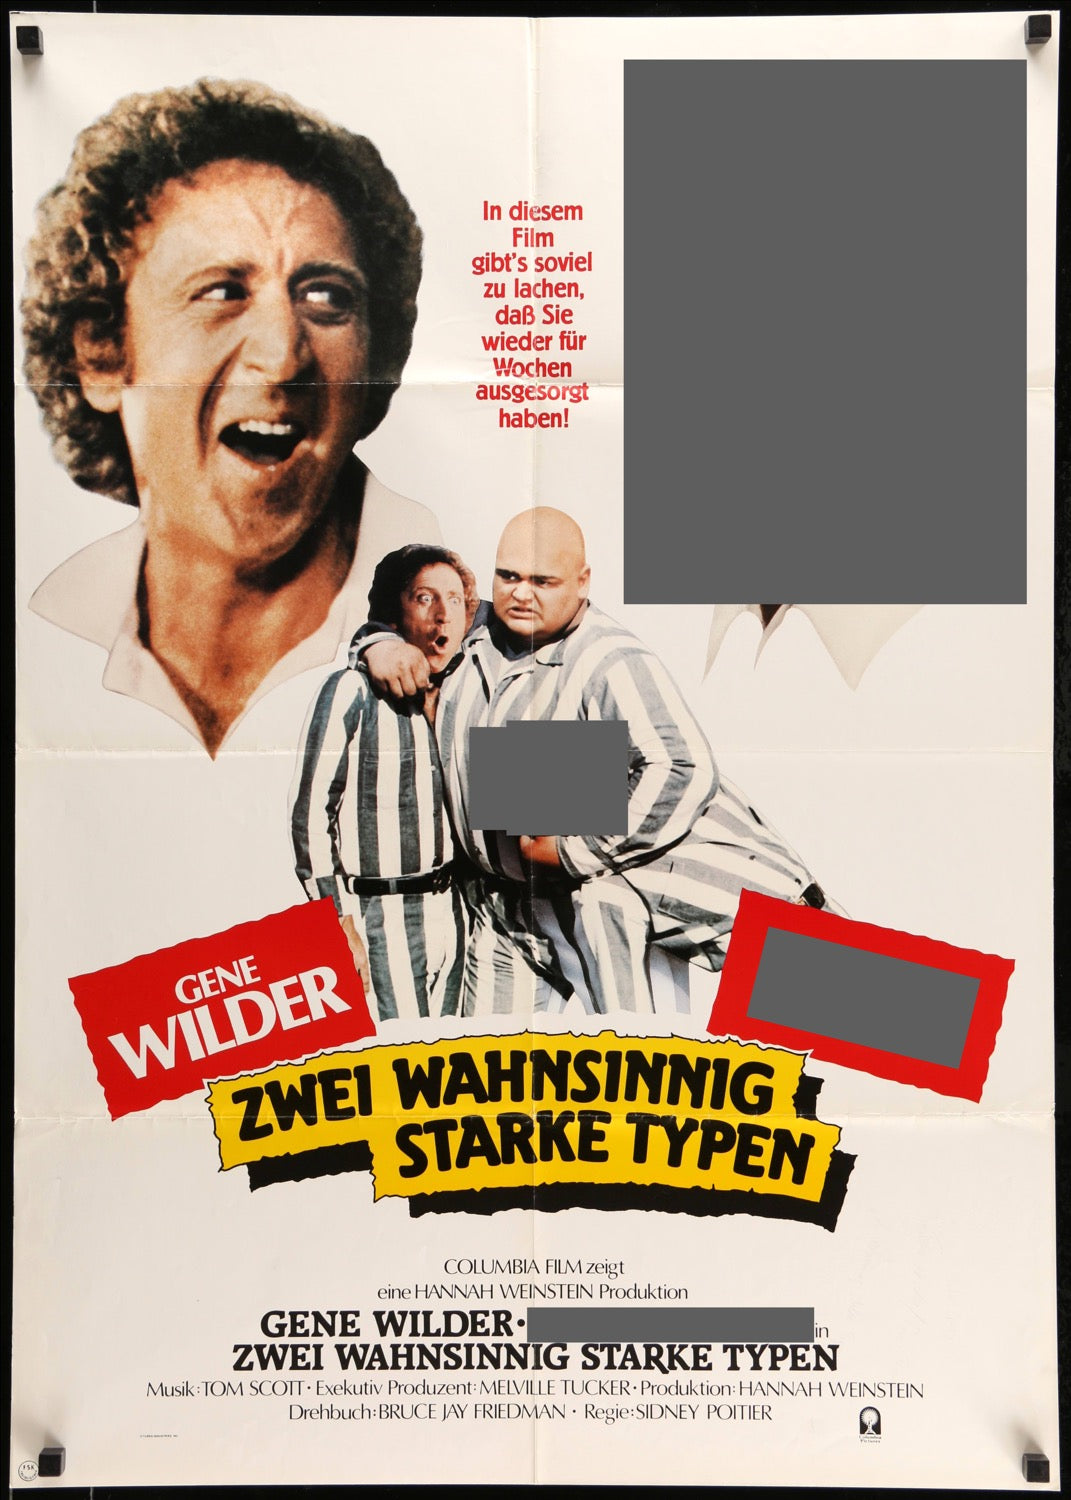 Stir Crazy (1980) original movie poster for sale at Original Film Art